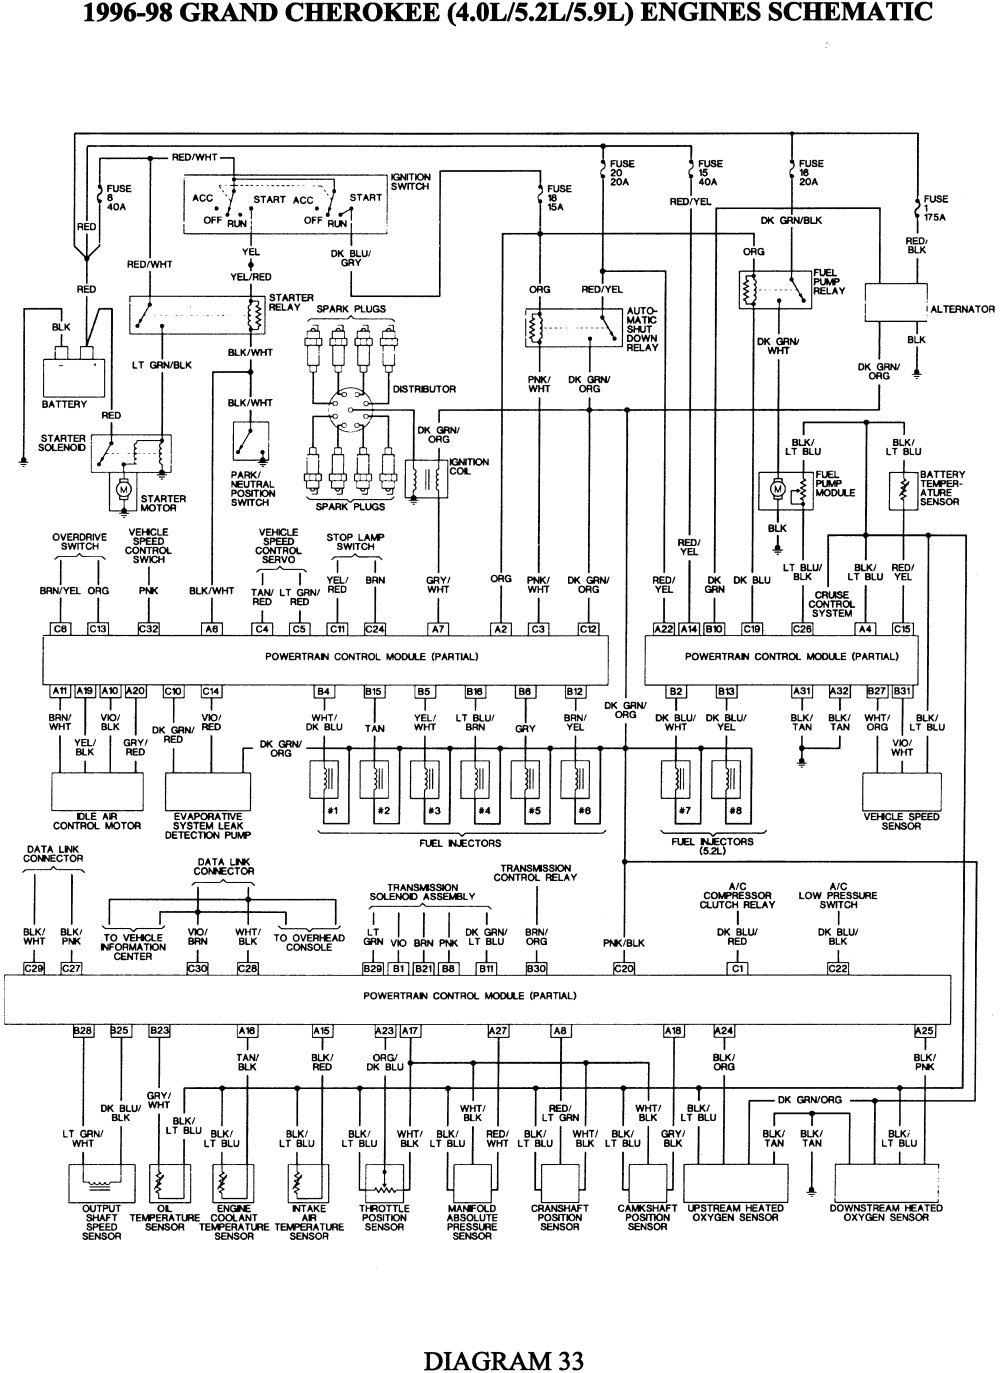 jeep zj wiring diagram wiring diagram expertjeep zj wiring diagram wiring diagram centre jeep grand cherokee